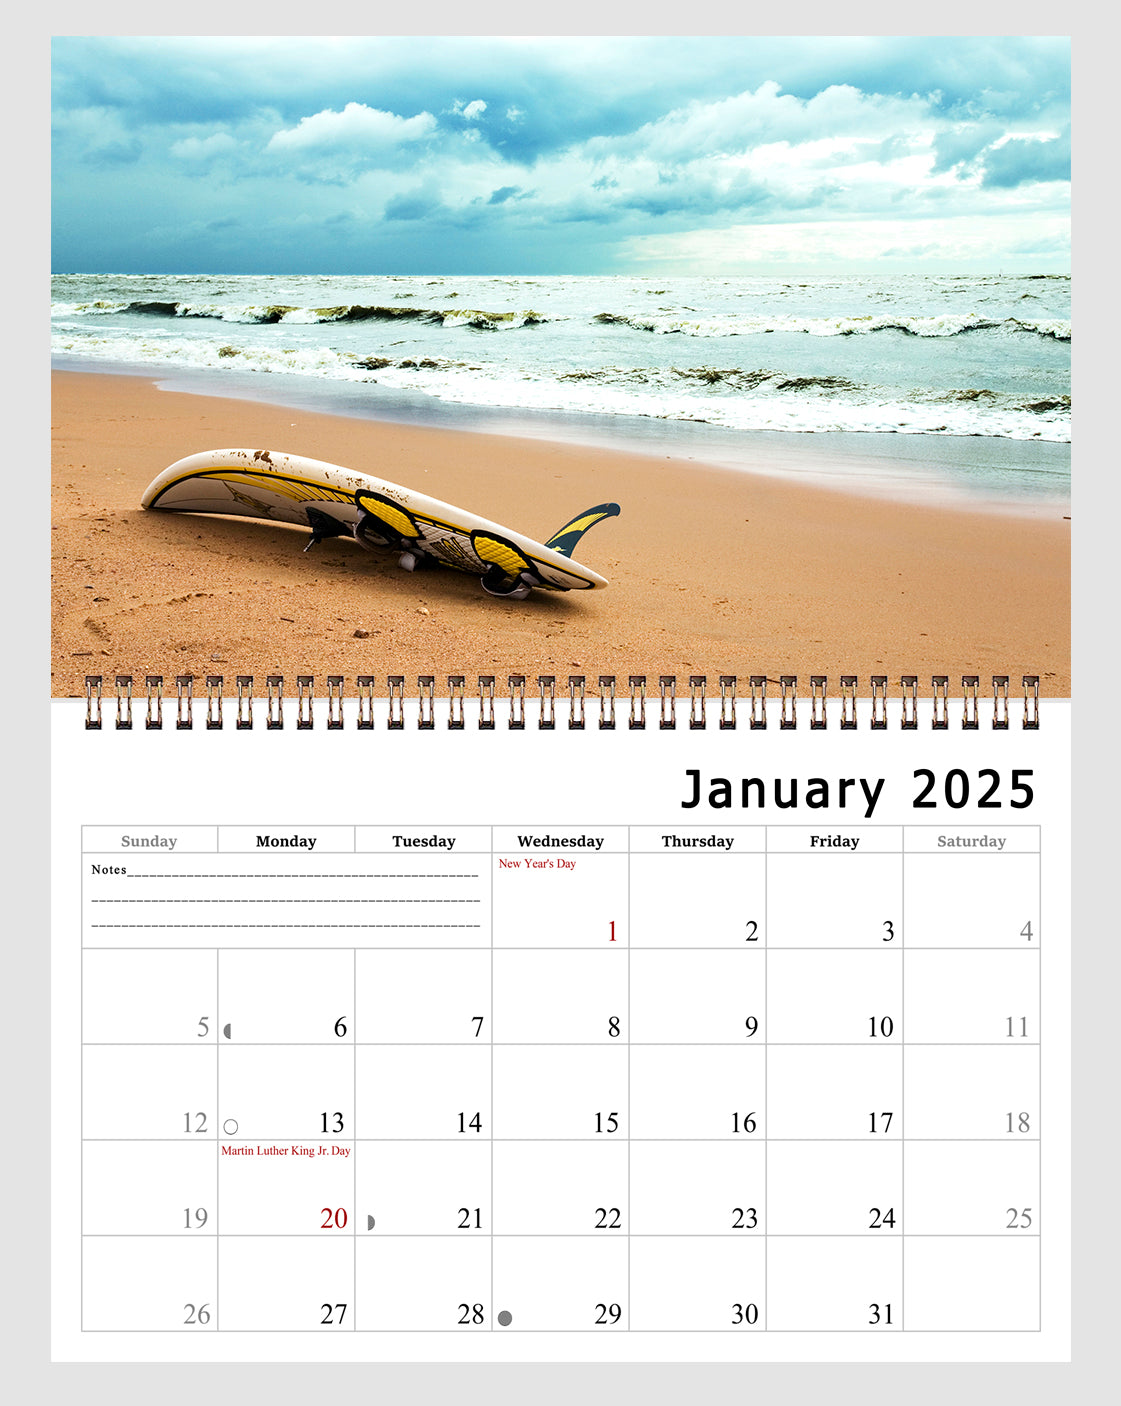 2025 Spiral-bound Wall Calendar (Beaches) - 12 Months Desktop/Wall Calendar/Planner